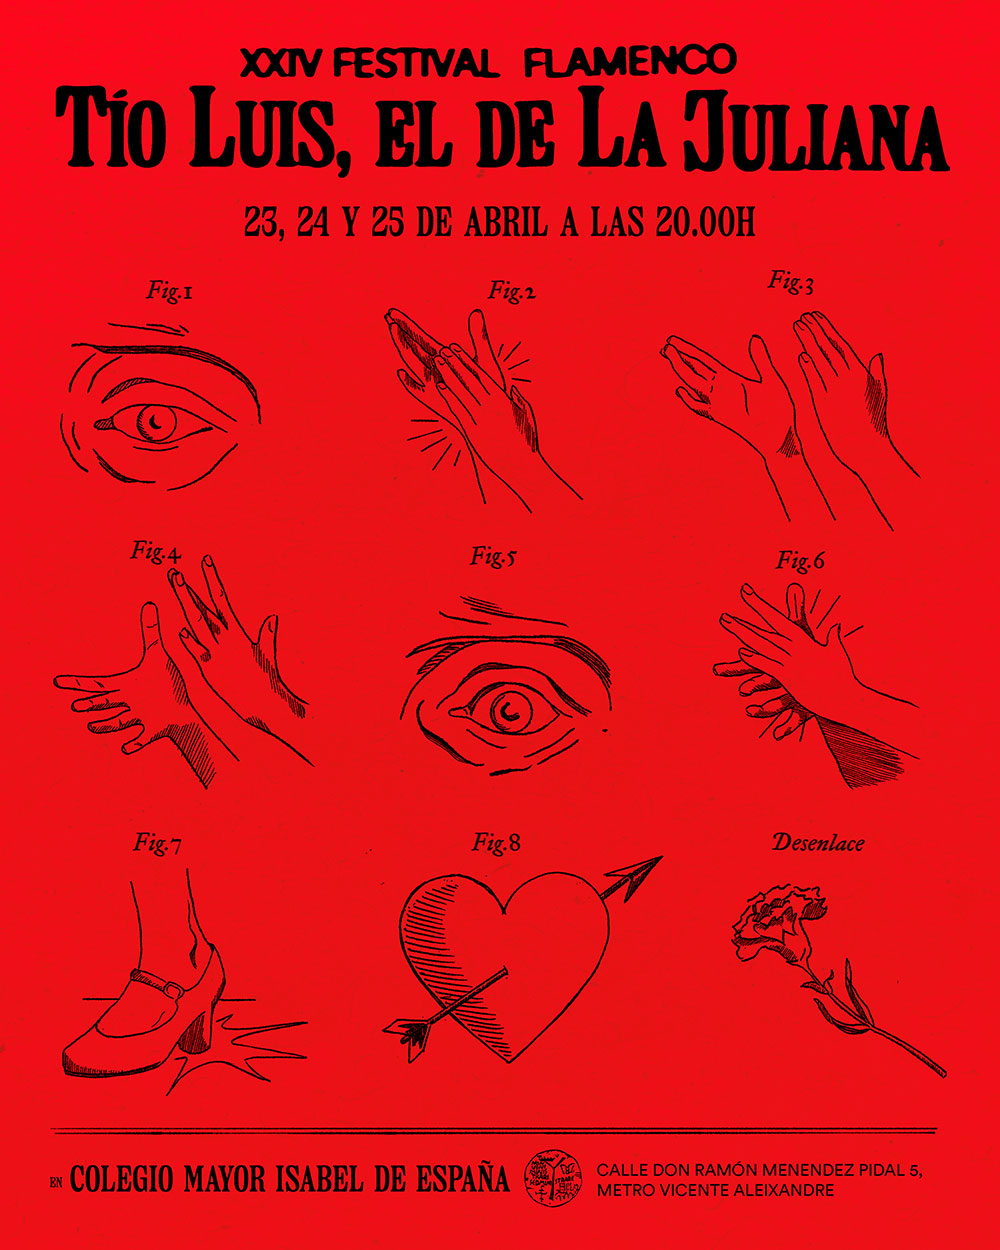 Nueva edición del Festival Universitario Tío Luis, El de la Juliana, 23, 24 y 25 de abril, Colegio Mayor Isabel de España